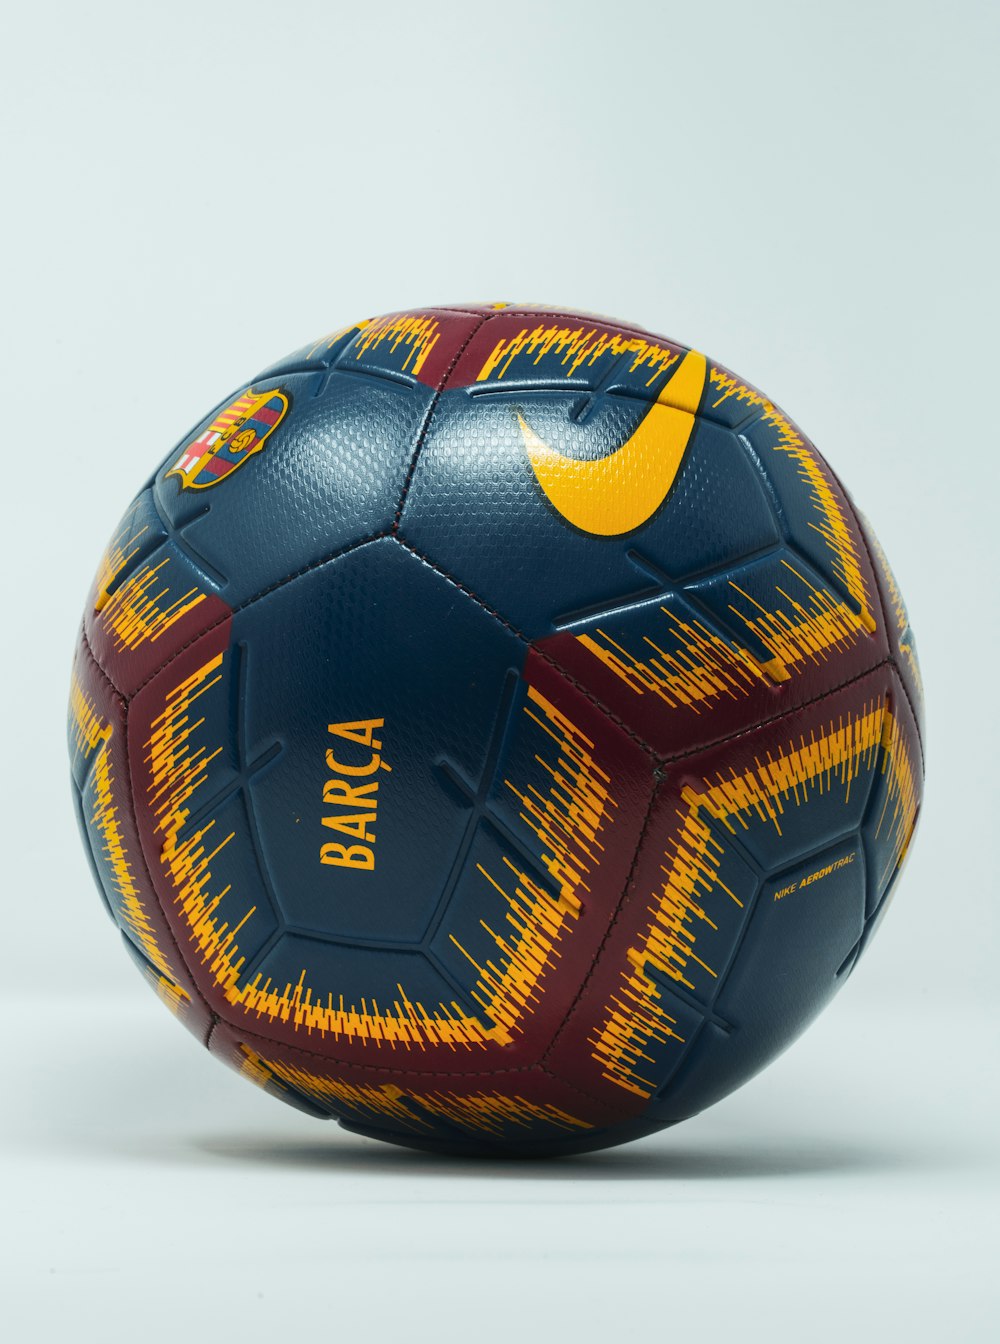 Ballon de football Nike bleu, marron et jaune